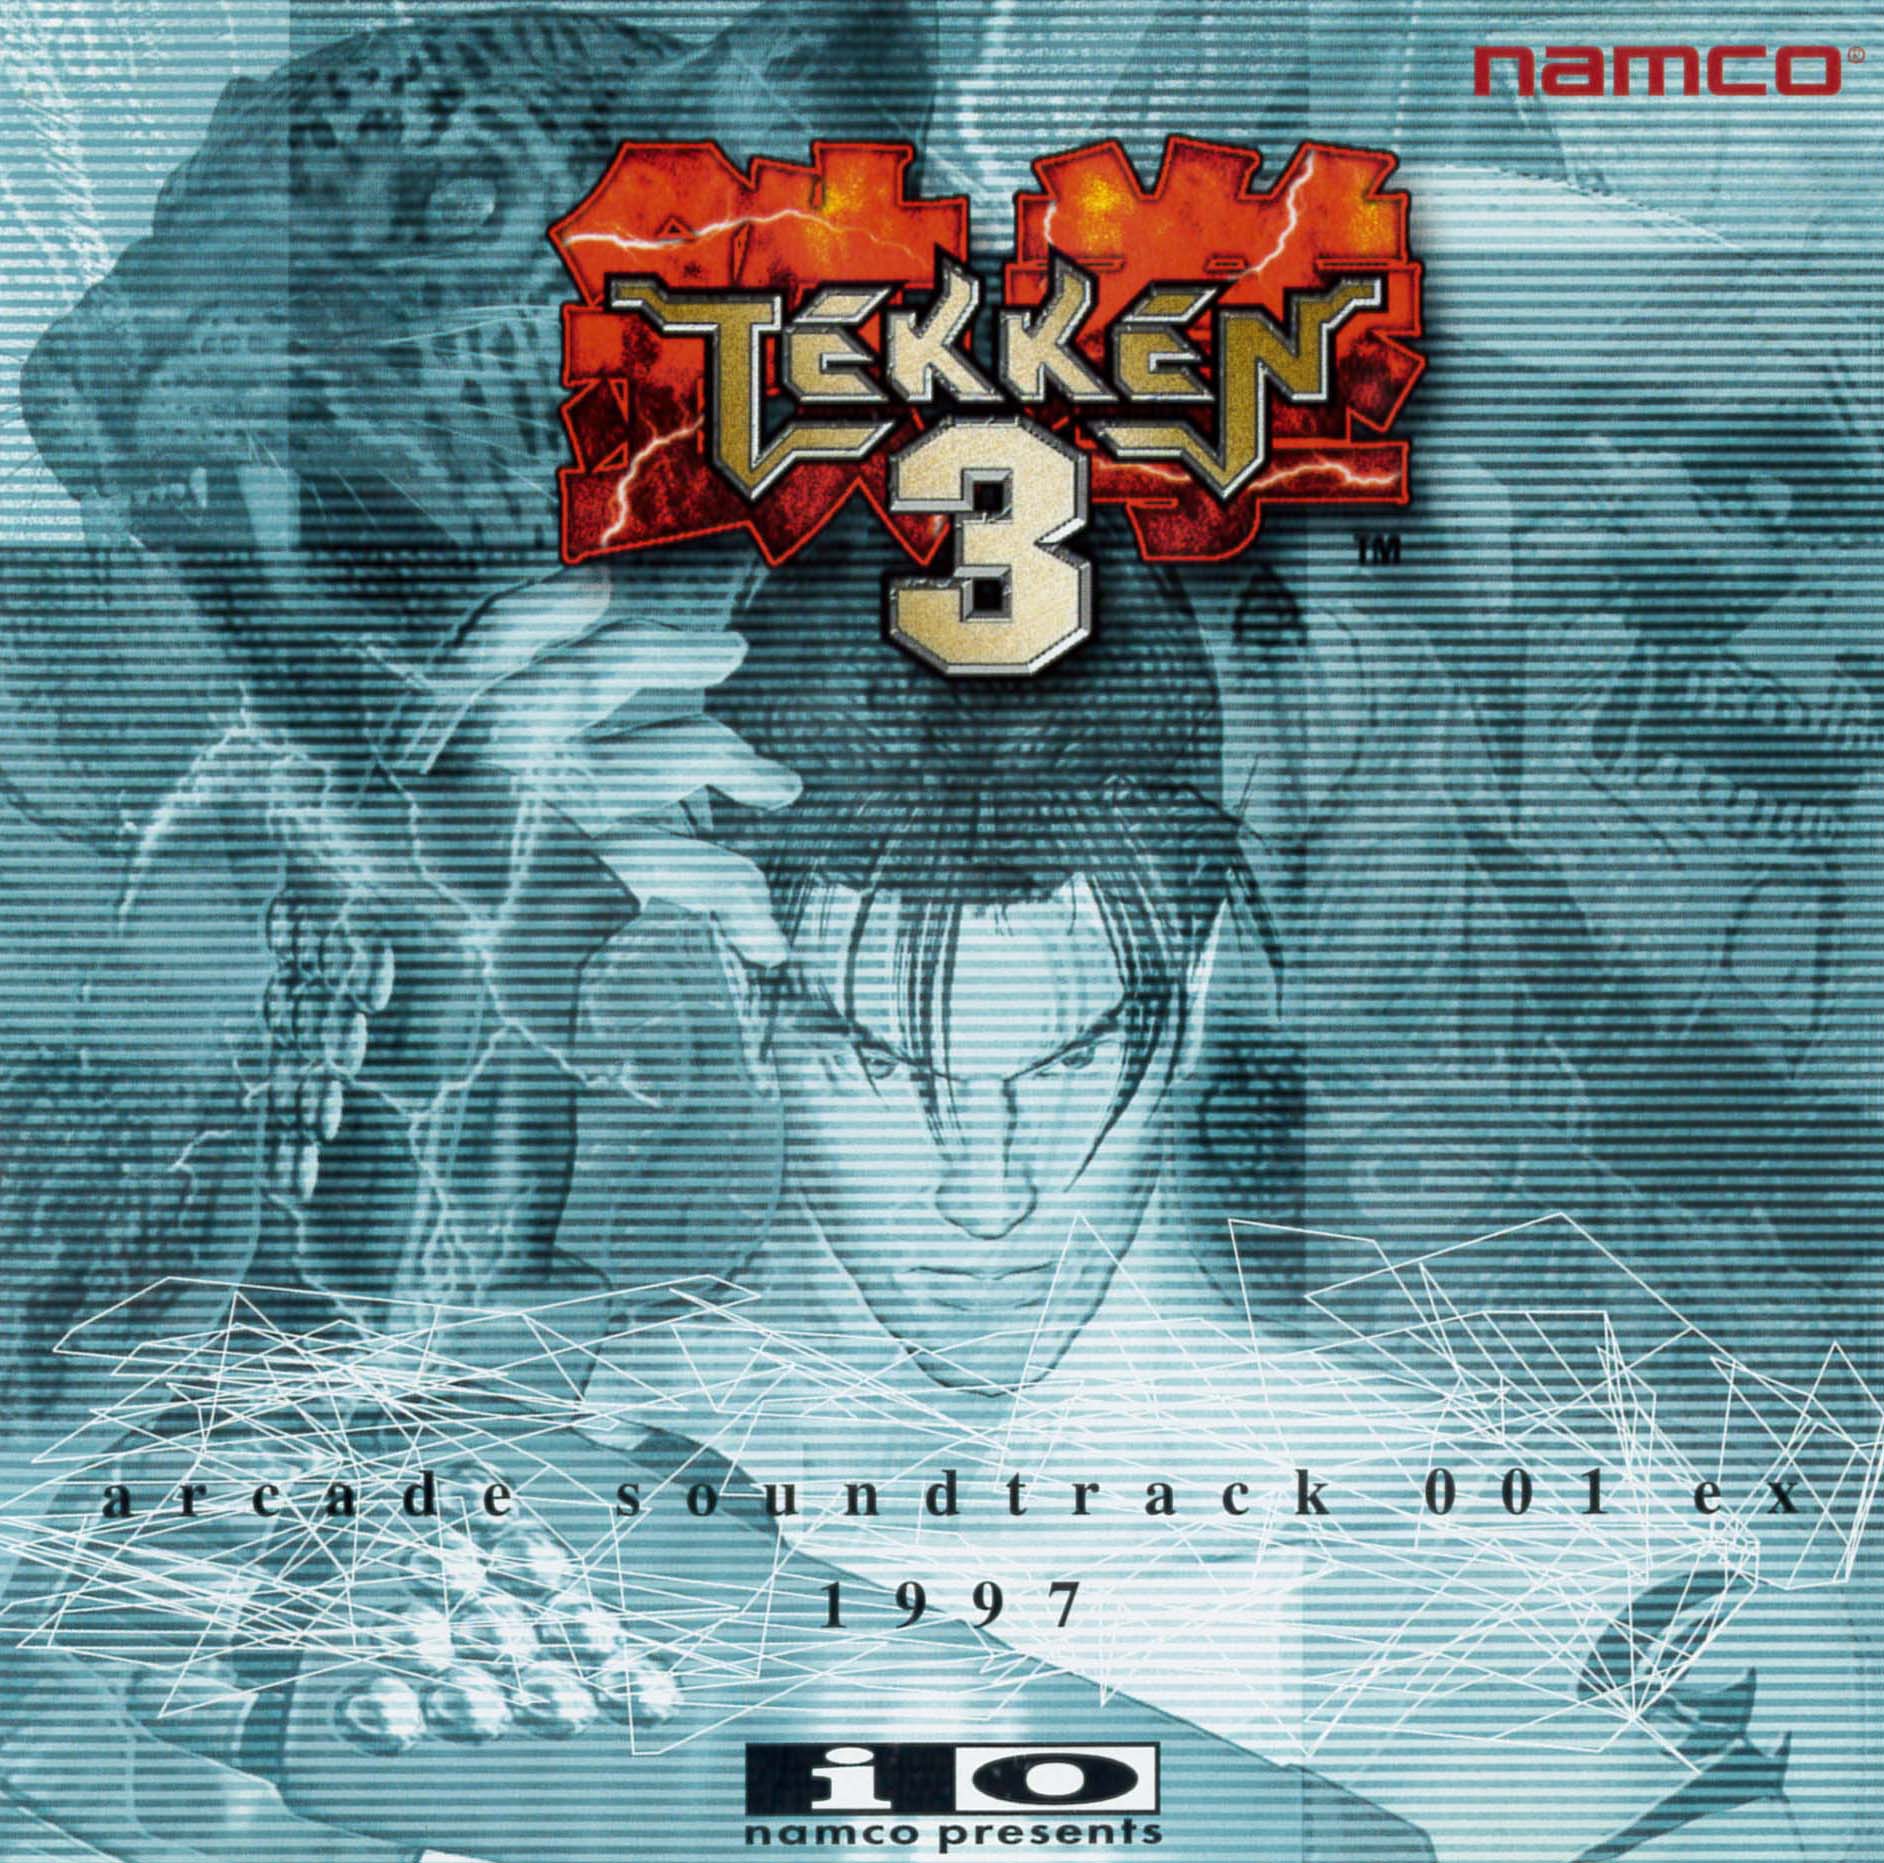 Tải nhạc nền Tekken 3 background music game download Hay nhất dành cho game thủ